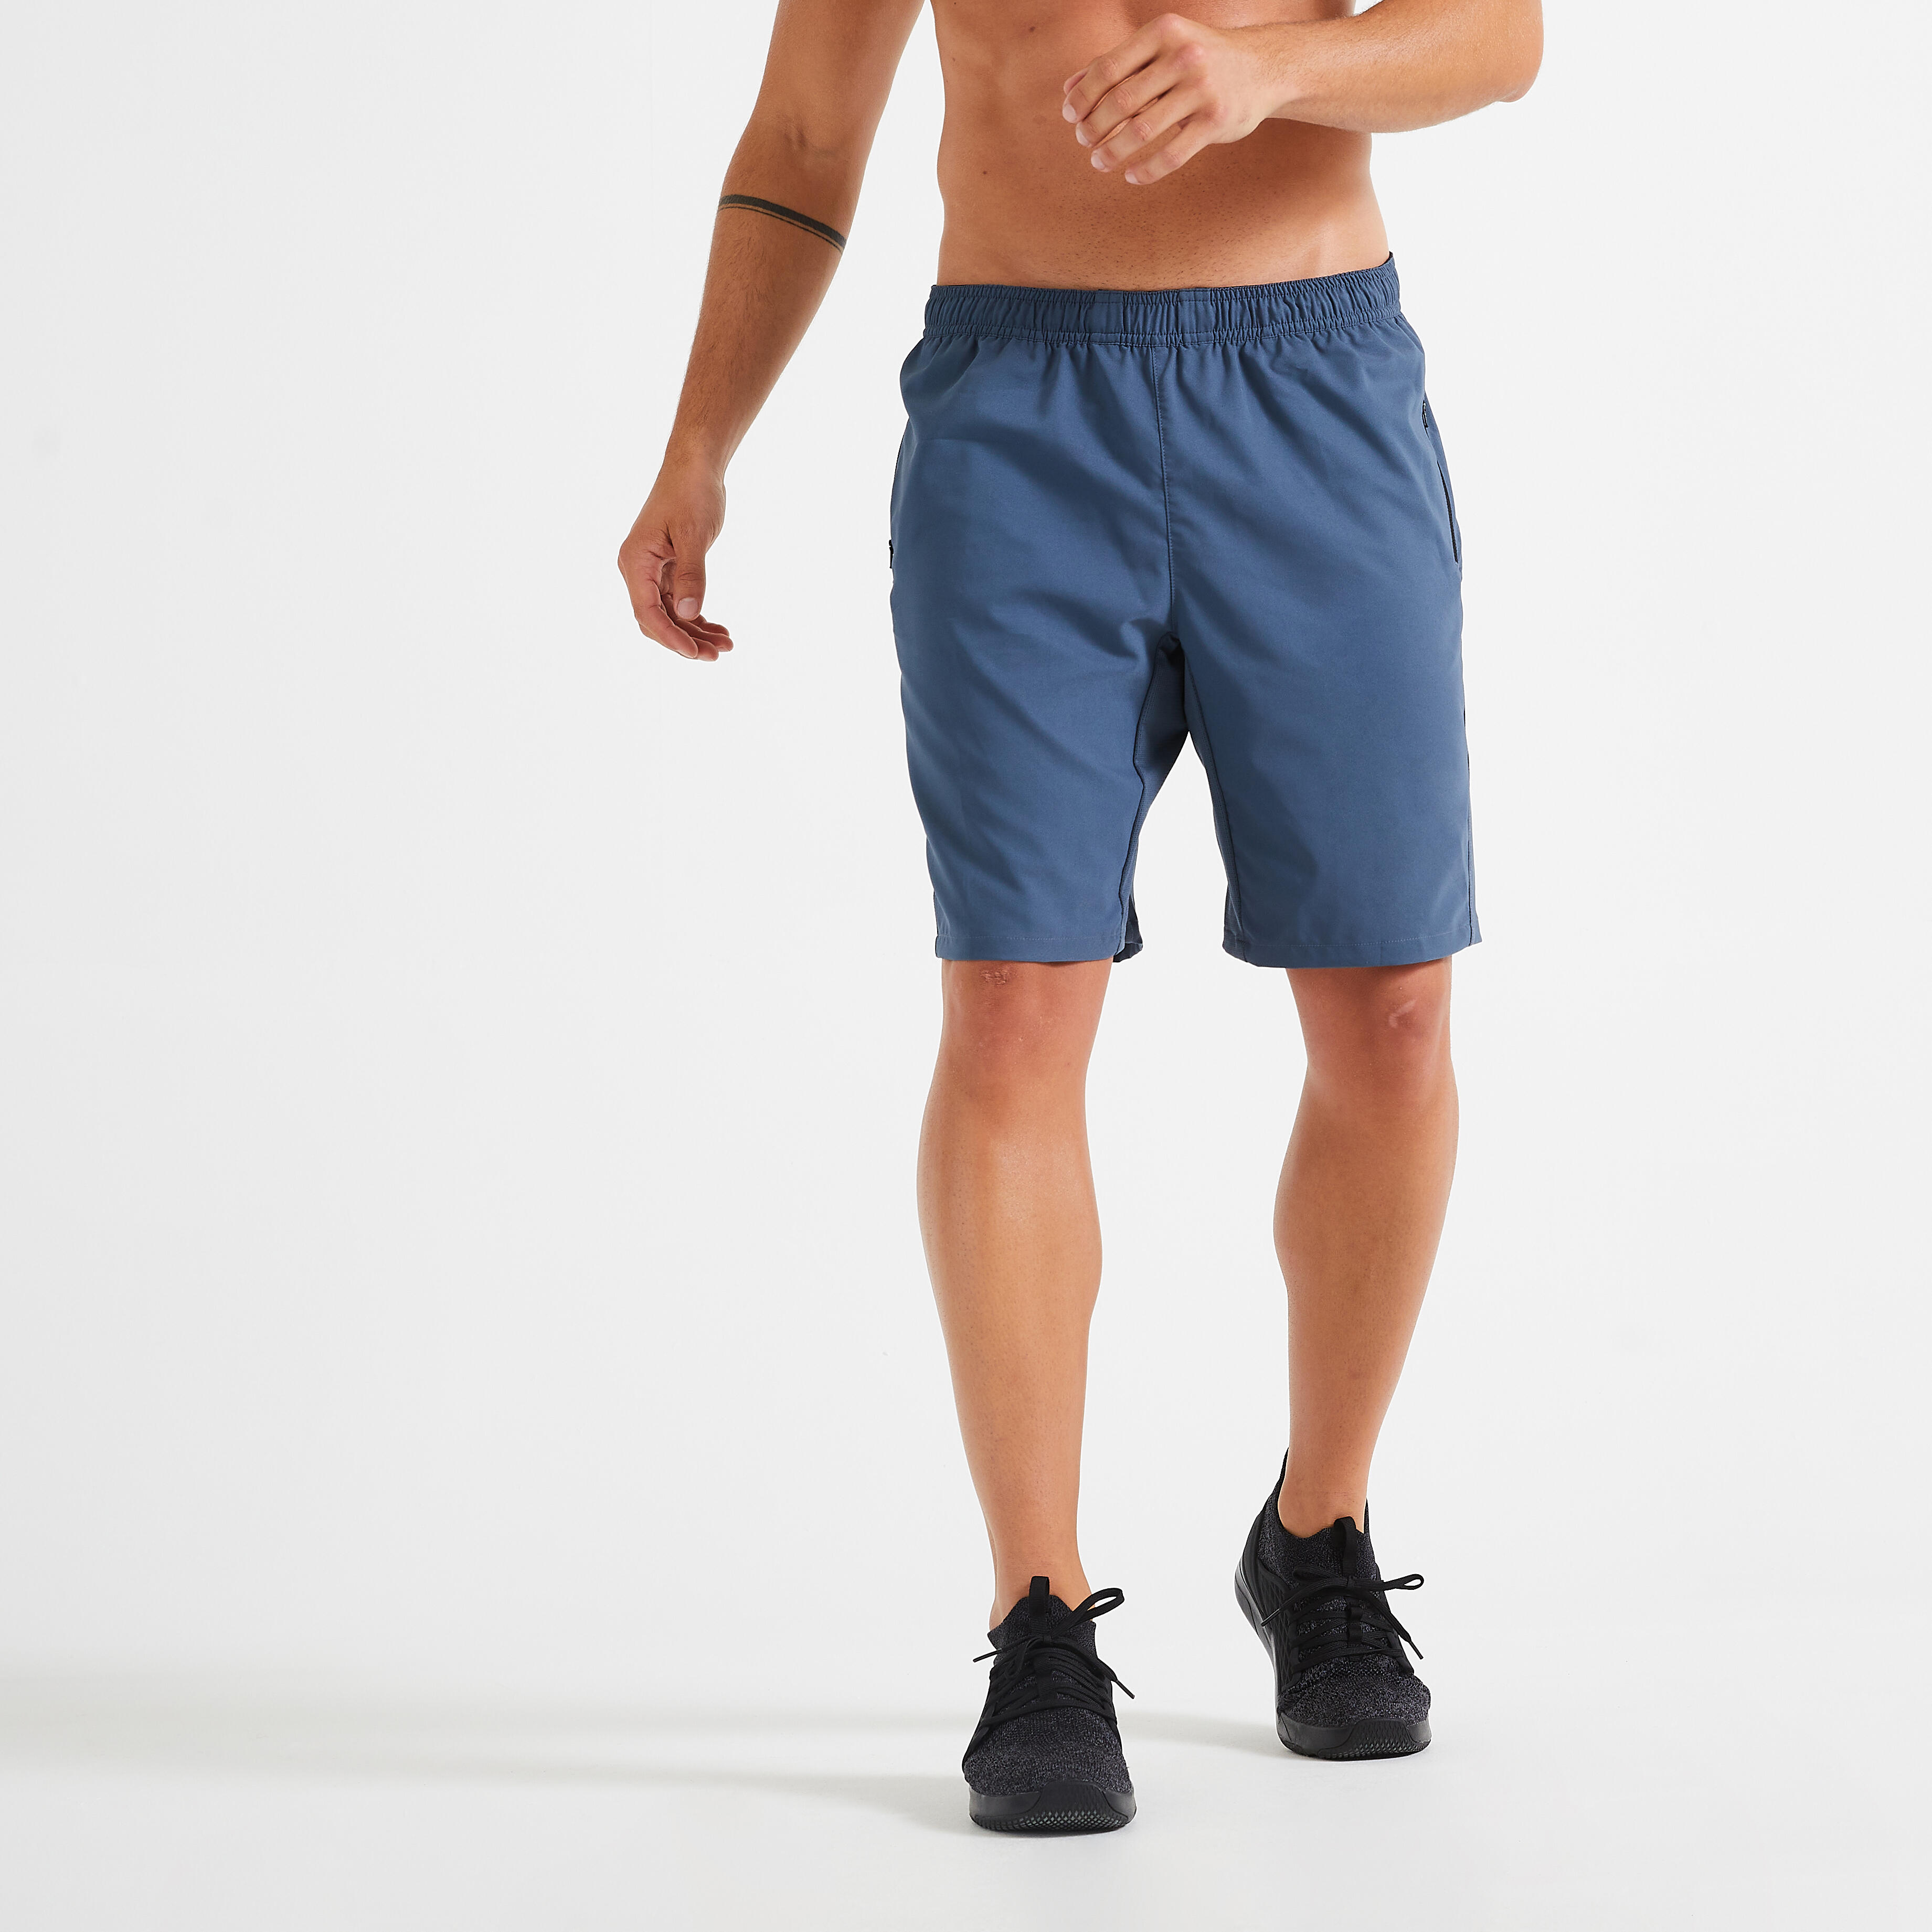 Pantalon scurt 120 Fitness cu buzunare și fermoar Albastru Bărbați decathlon.ro  Imbracaminte fitness barbati